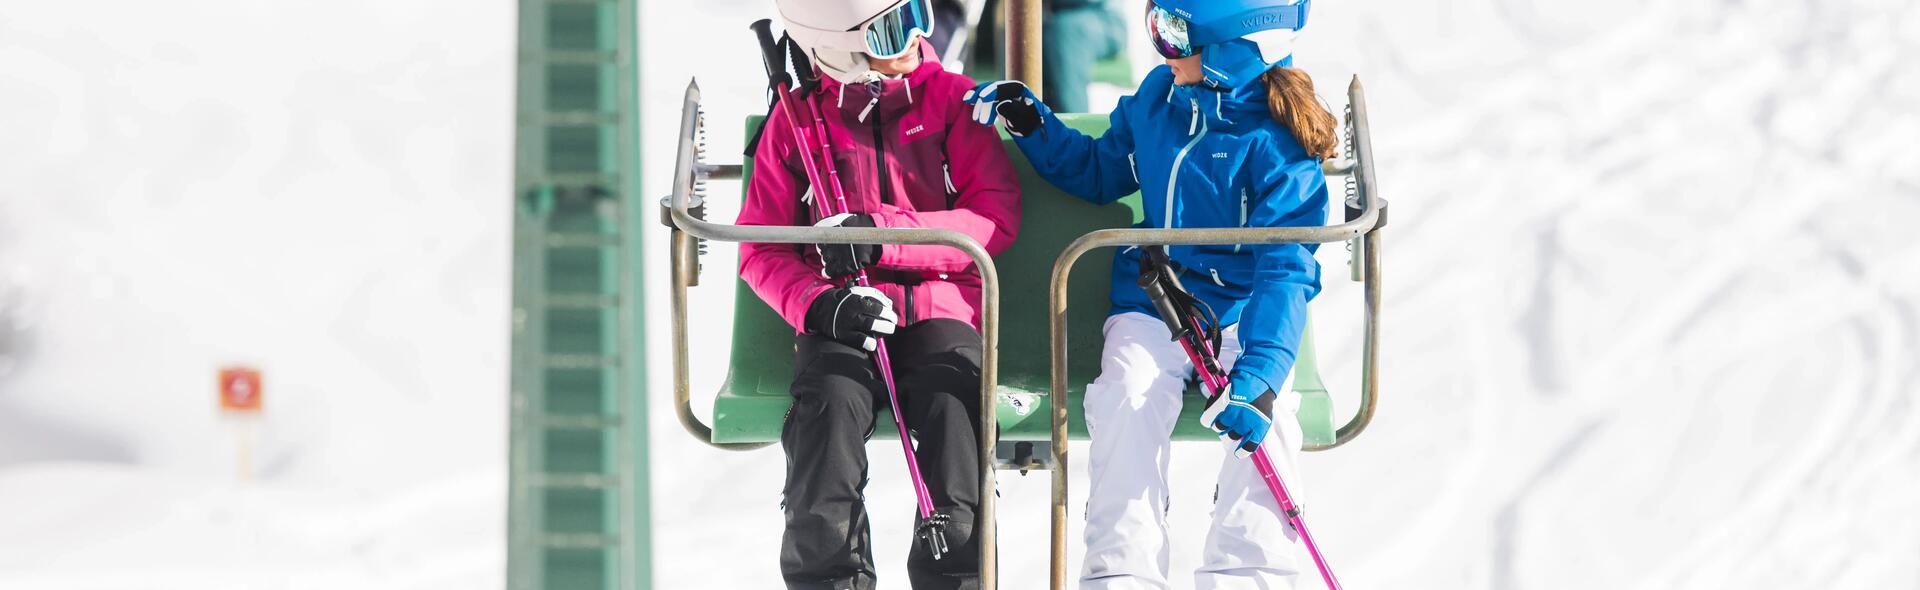 Como escolher luvas ou luvas sem dedo para ski criança